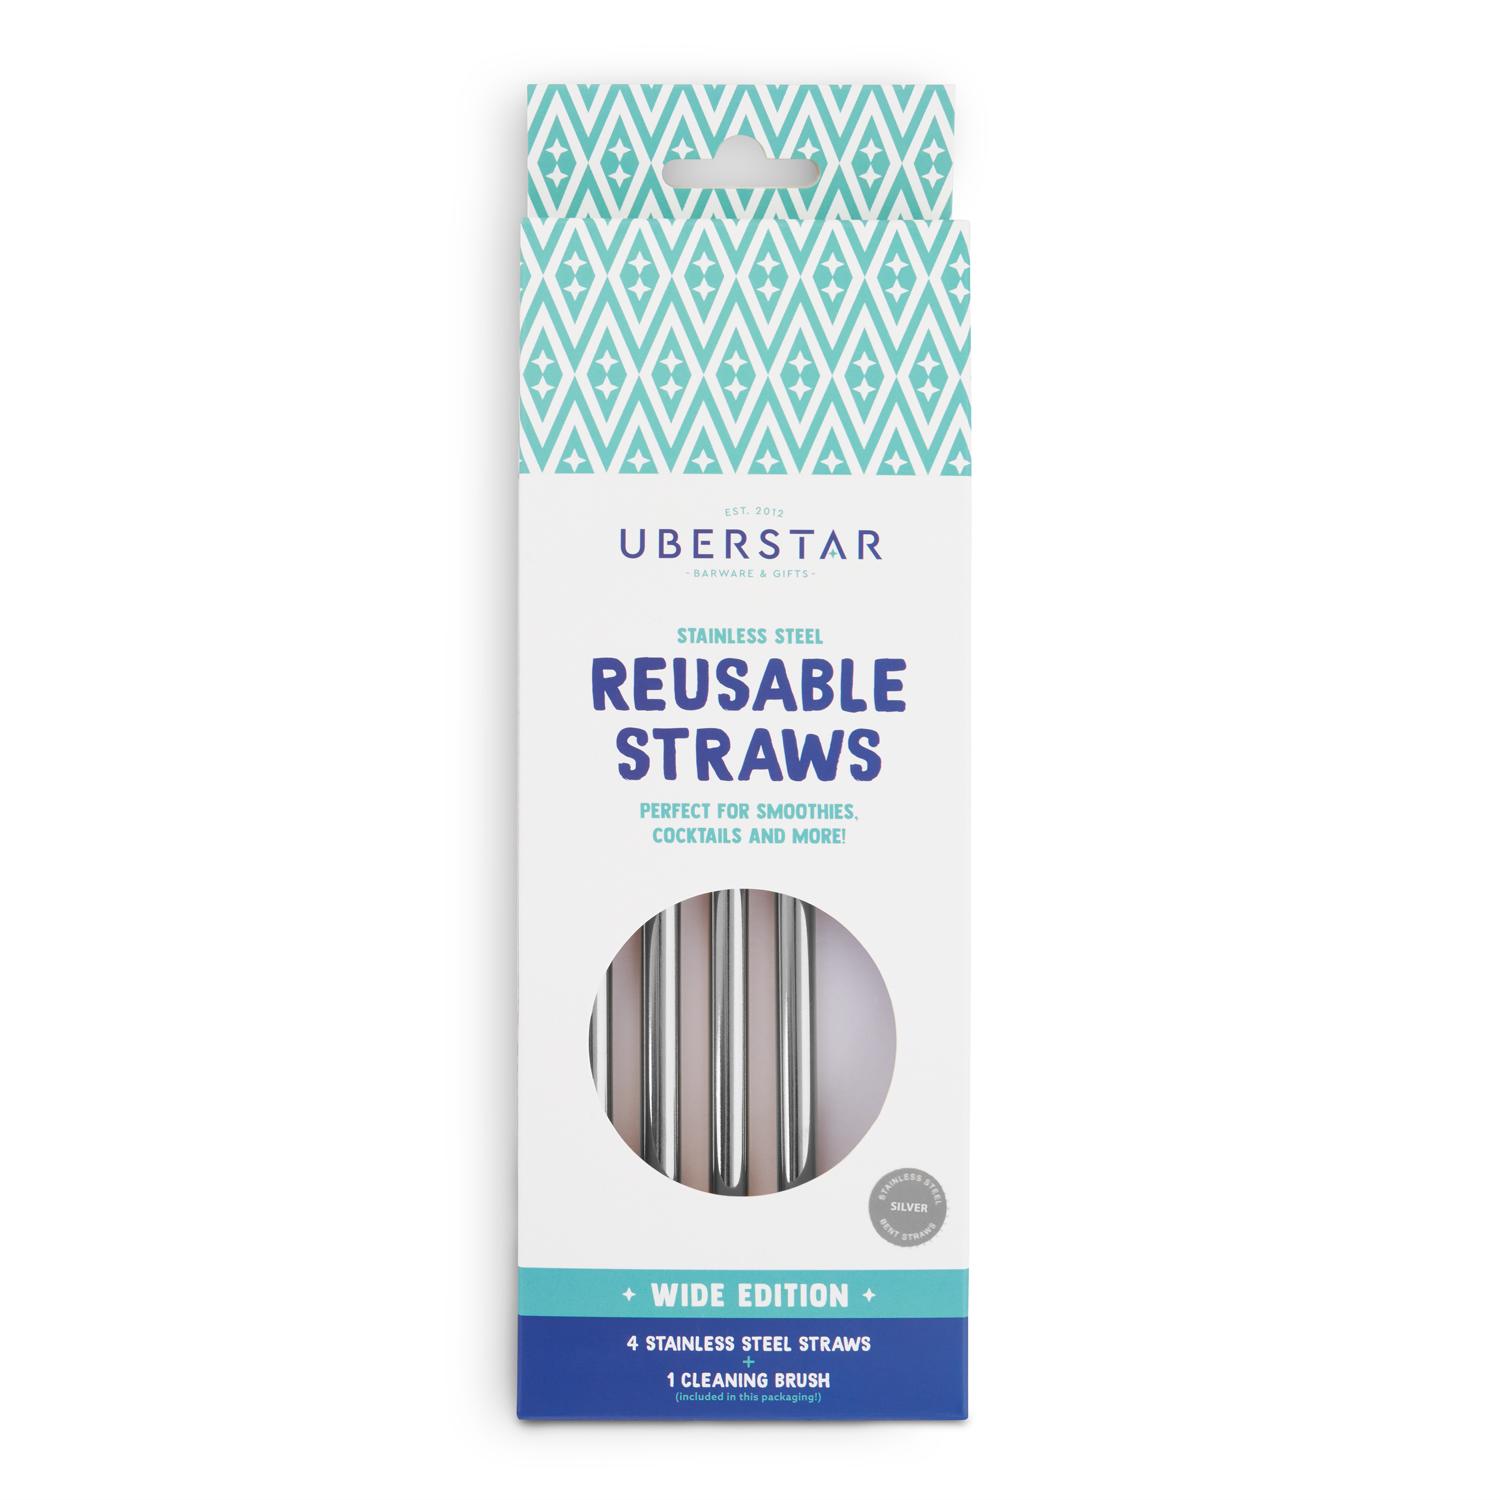 Uberstar Reusable Stainless Steel Straws (4 Pack)